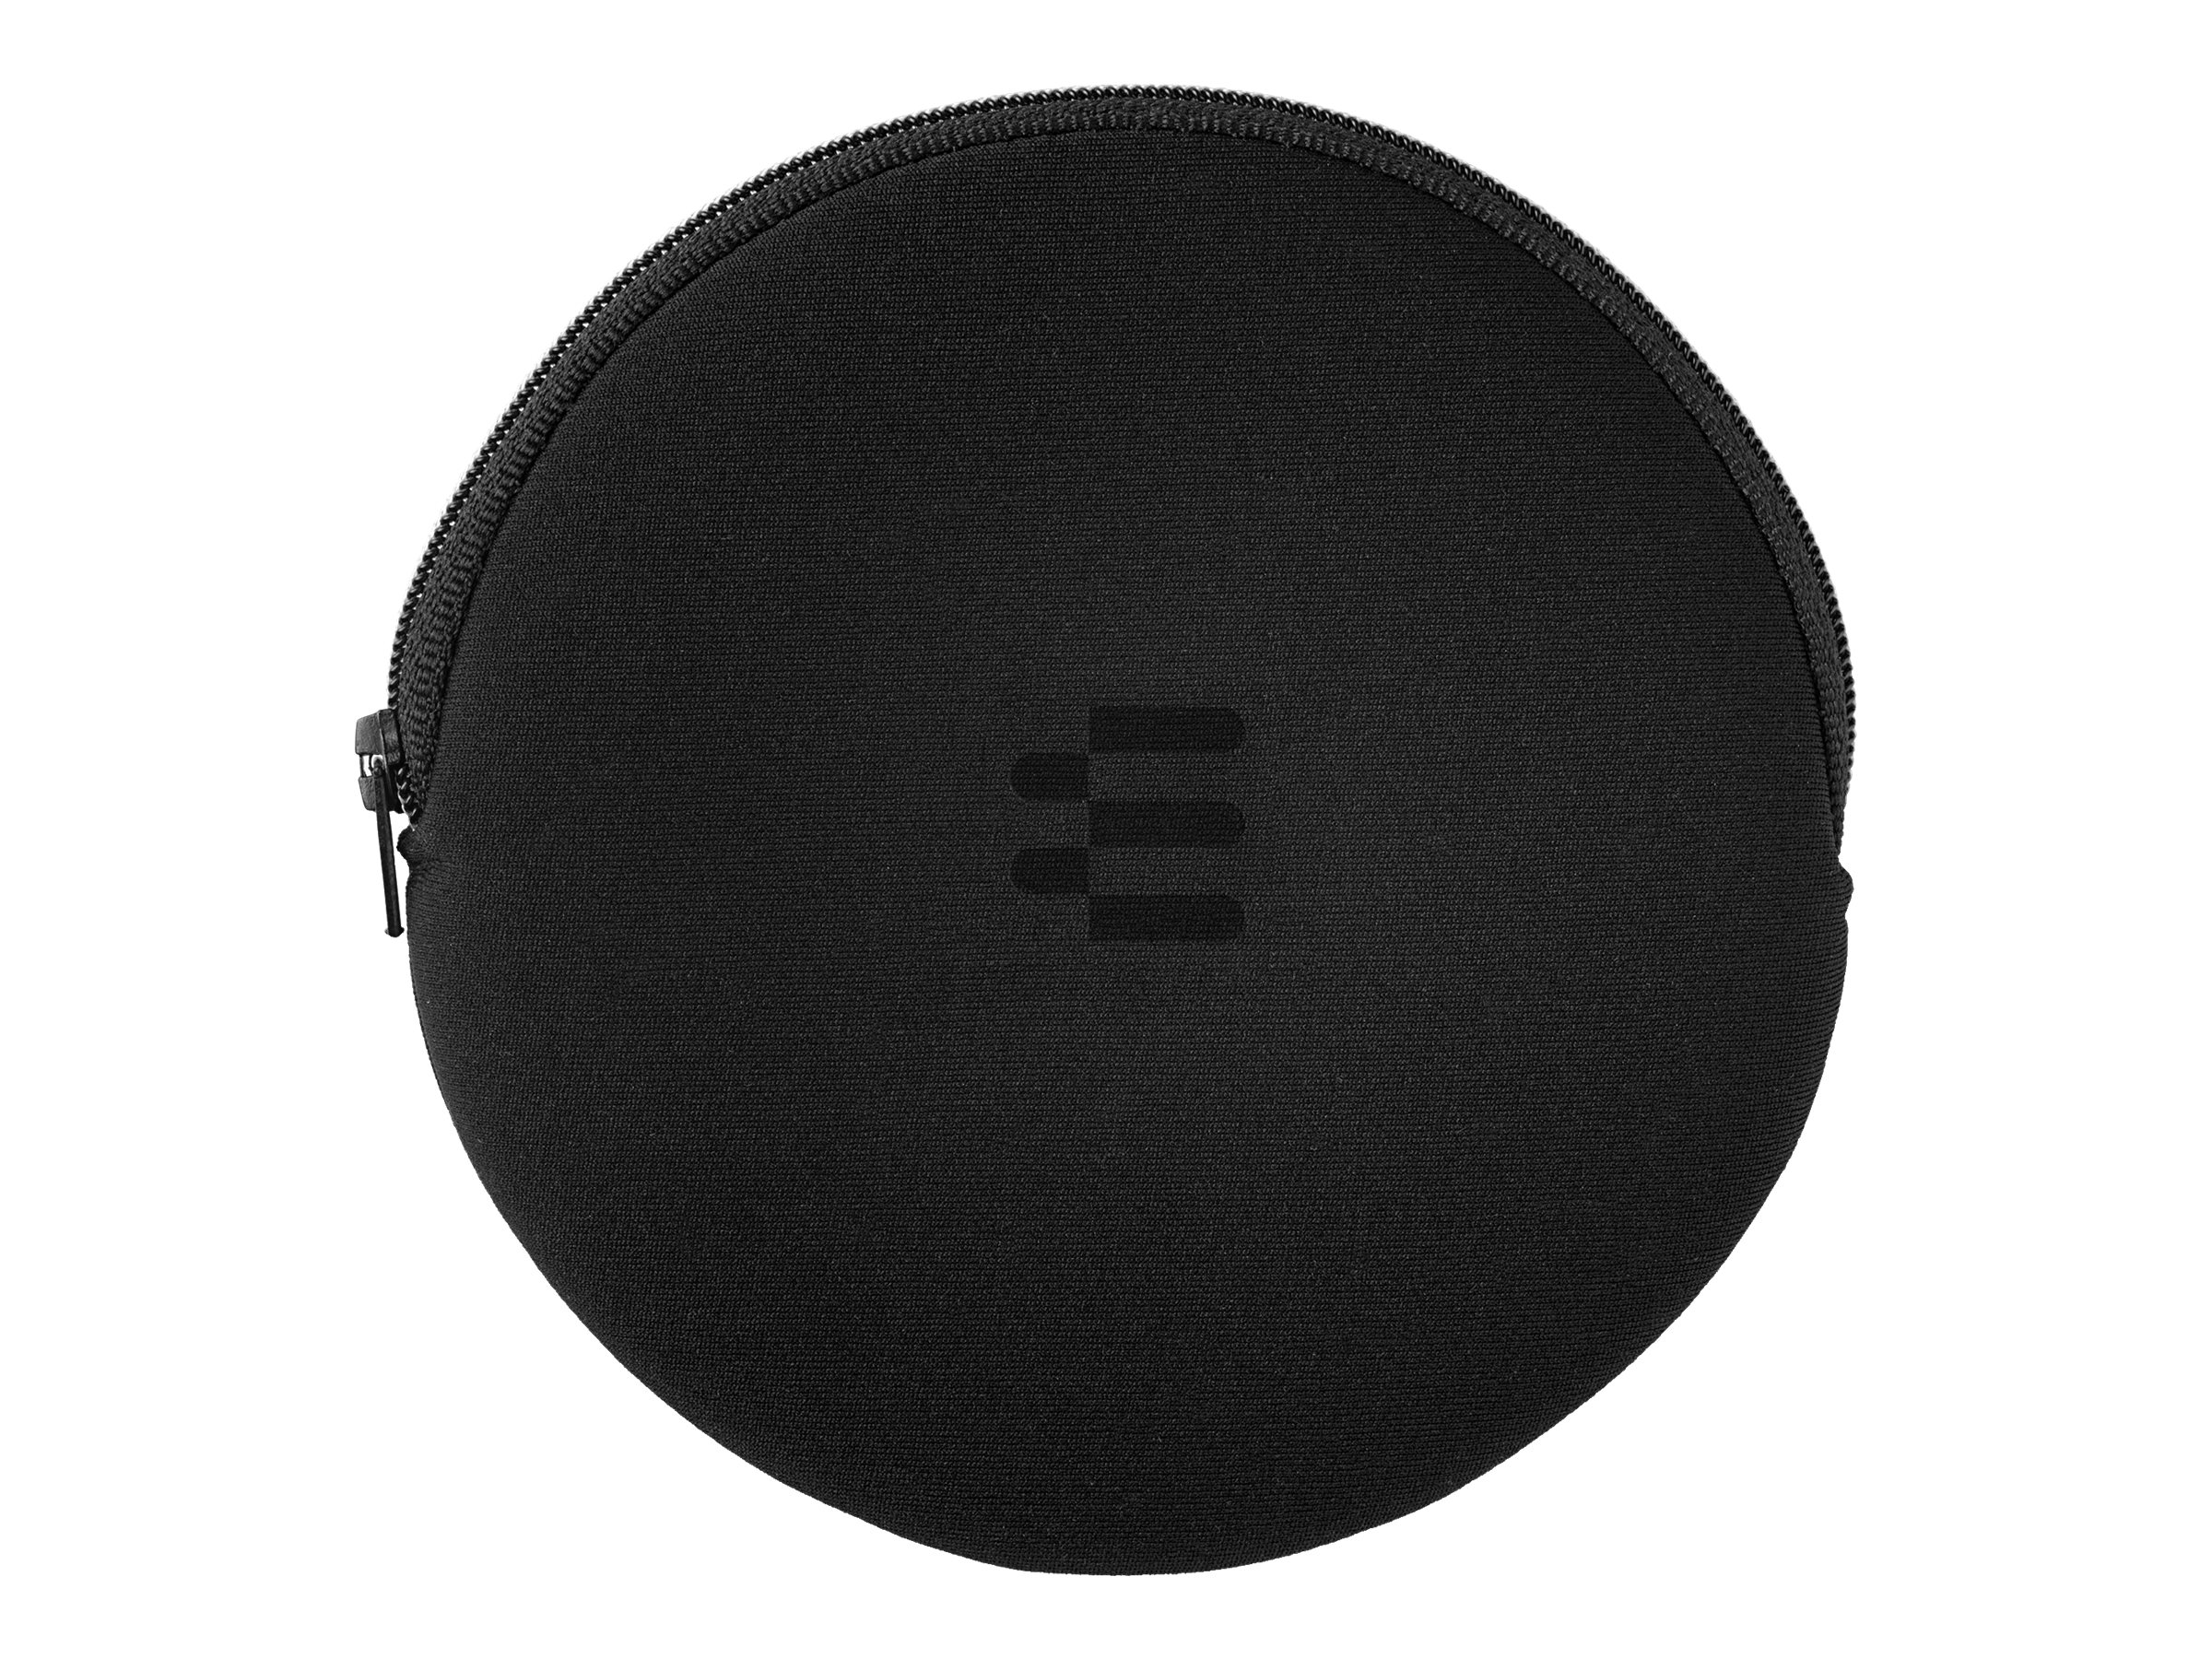 EPOS EXPAND 40 + - Haut-parleur intelligent - Bluetooth - sans fil, filaire - USB-C - gris, noir - Optimisé pour la CU - 1000662 - Haut-parleurs